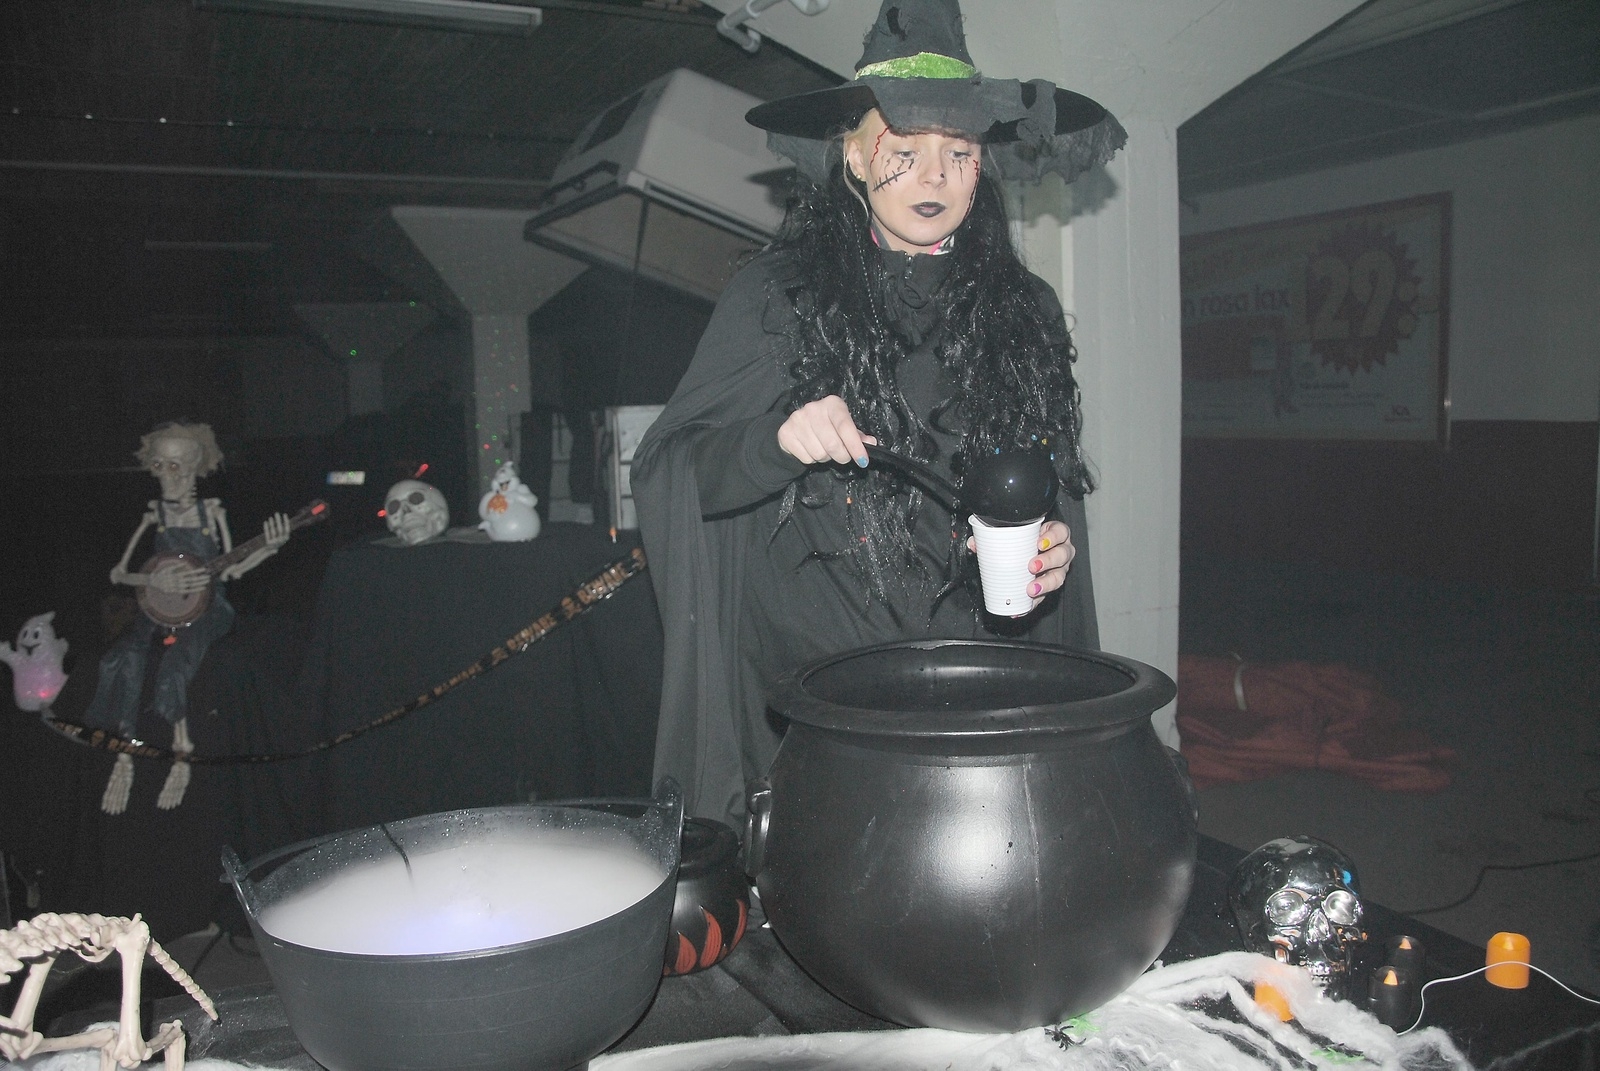 Magica de Hex serverade spökbrygd till besökarna. Foto: Peter Paulsson